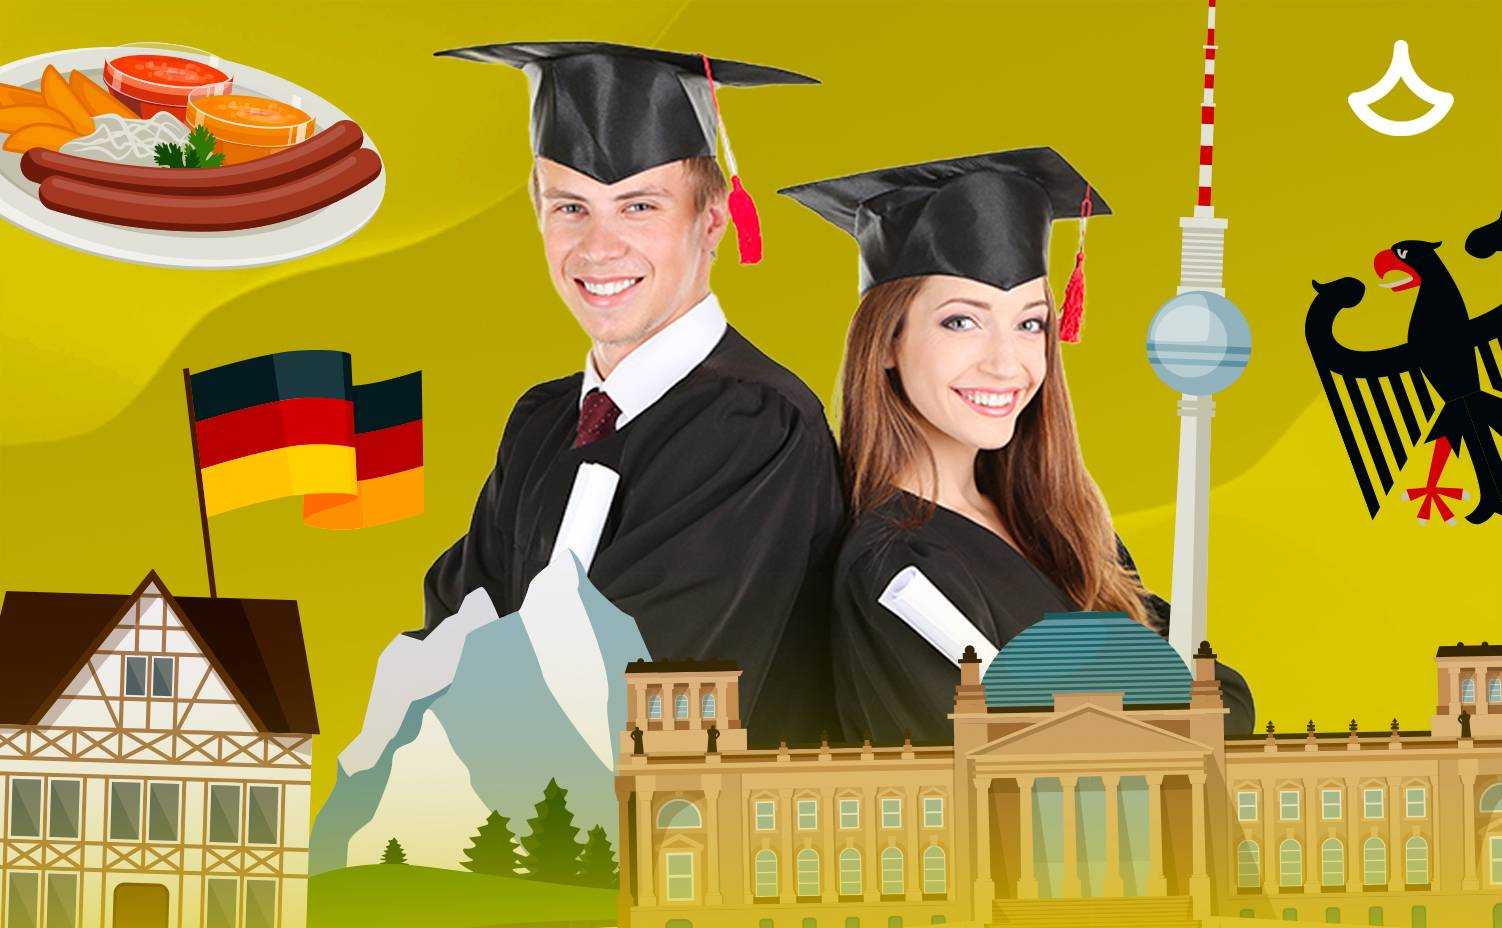 Дрезденский технический университет (dresden university of technology, tud) | обучение в германии | глобал диалог